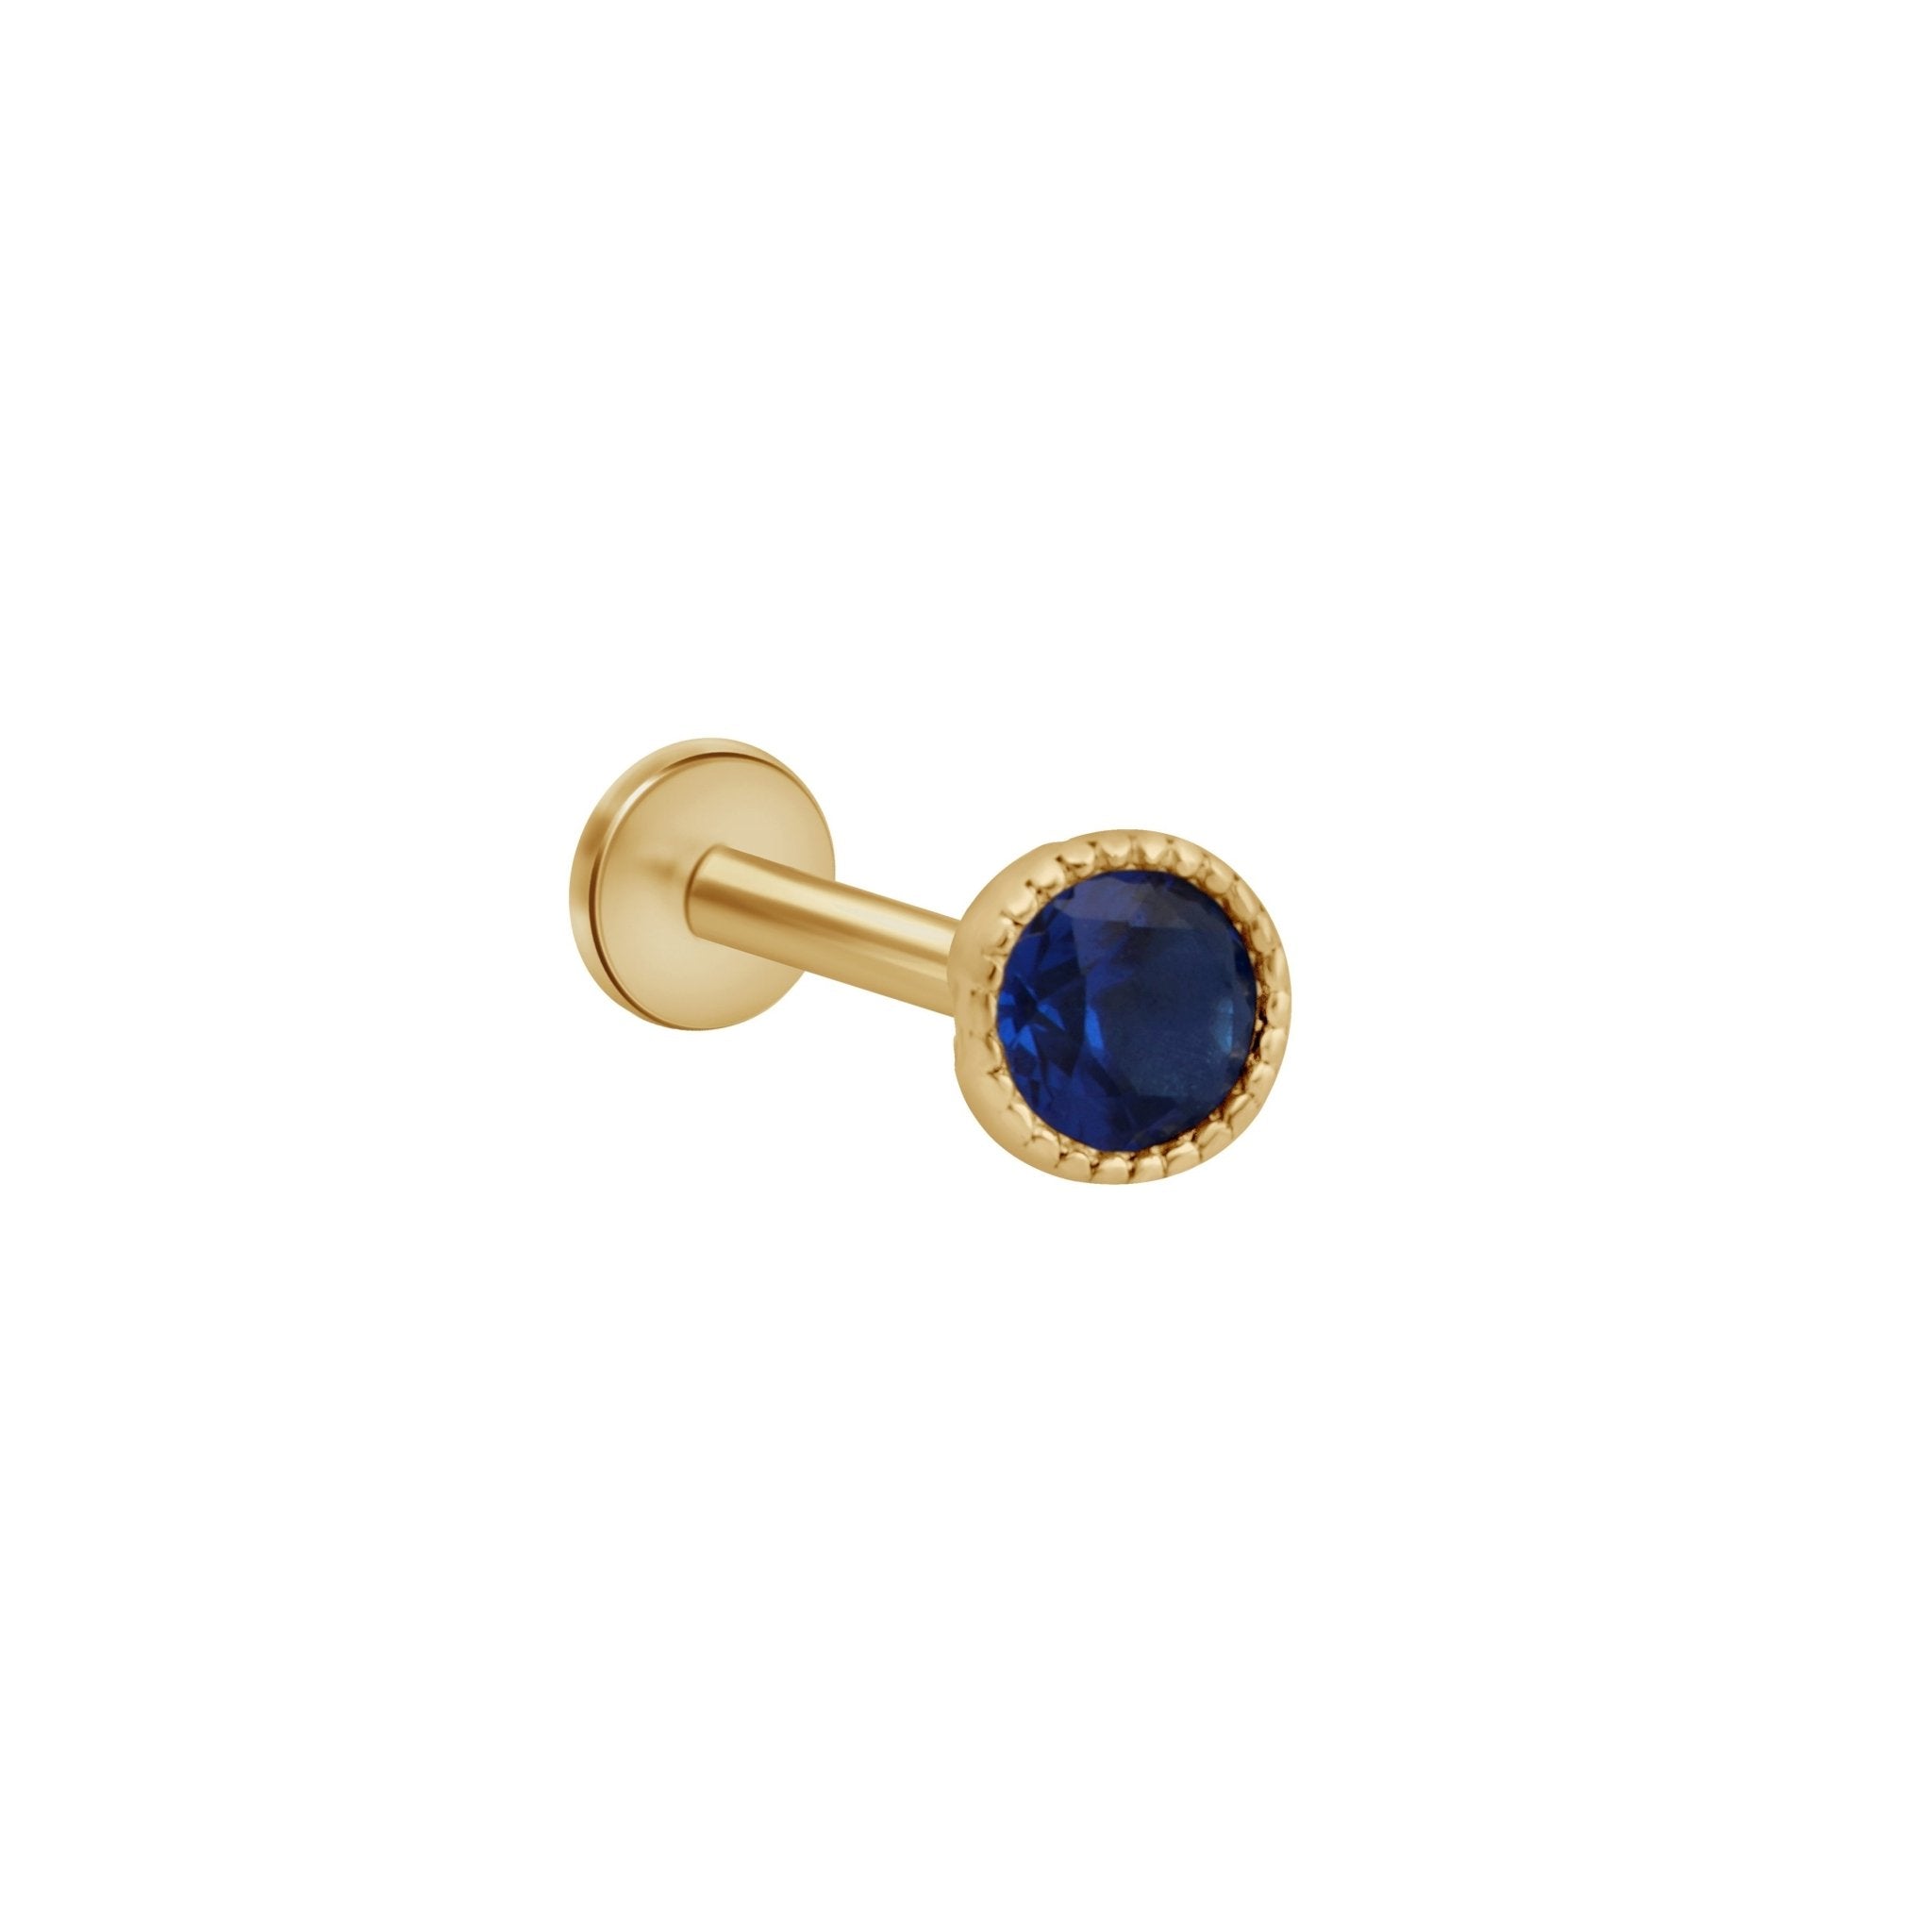 Blue Sapphire Milgrain Flat Back Stud Earrings Estella Collection #product_description# 18106 14k Birthstone Birthstone Earrings #tag4# #tag5# #tag6# #tag7# #tag8# #tag9# #tag10# 2.5MM 5MM